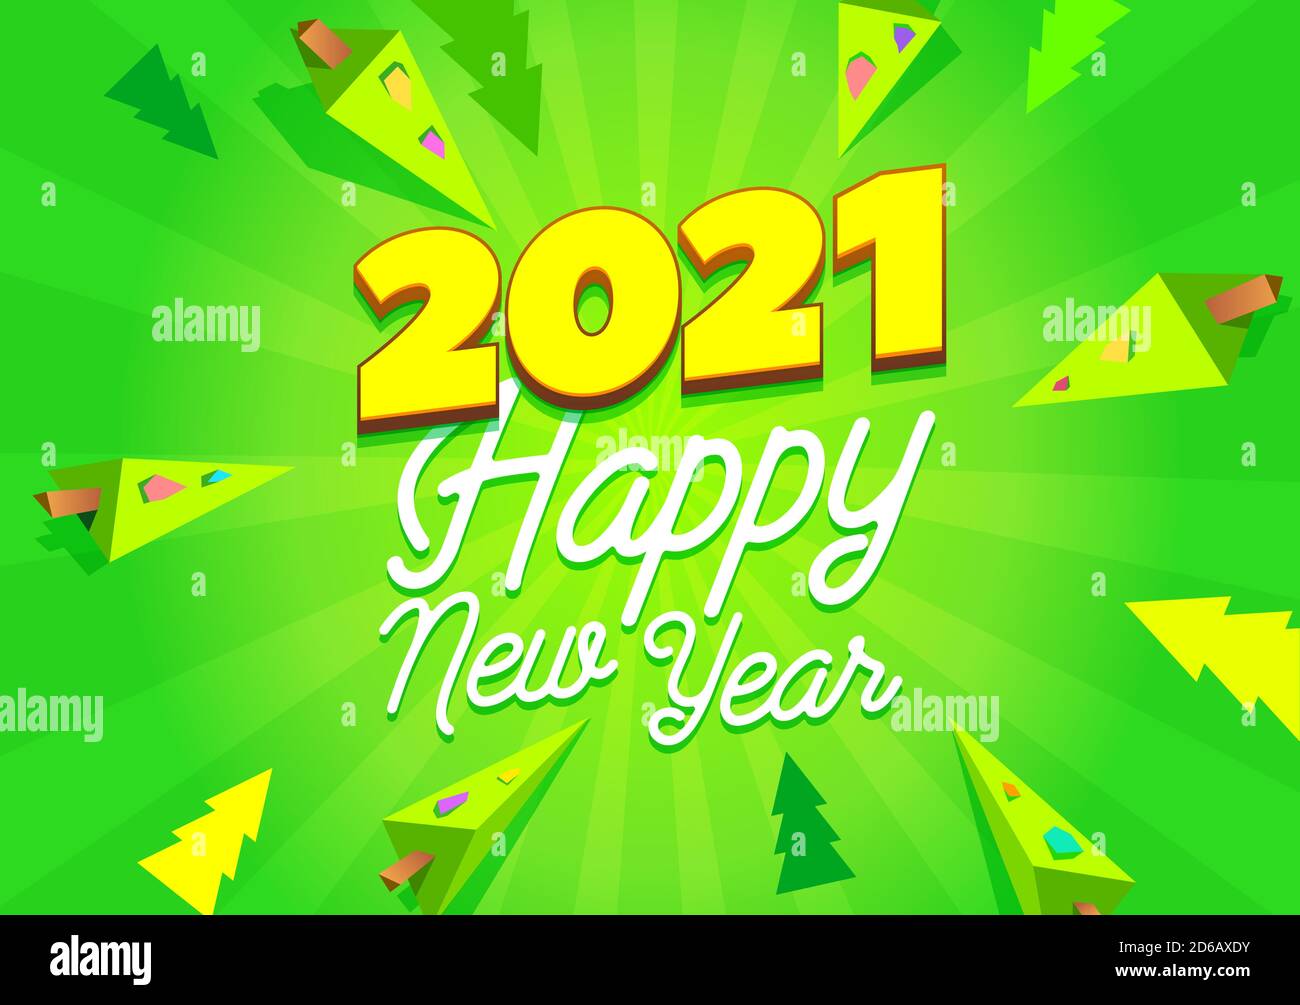 2021 Frohes Neues Jahr Banner. Event 2021 Poster Gruß Vektor Design Vorlage. Frohes neues Jahr 2021 grün Gruß Hintergrund Stock Vektor